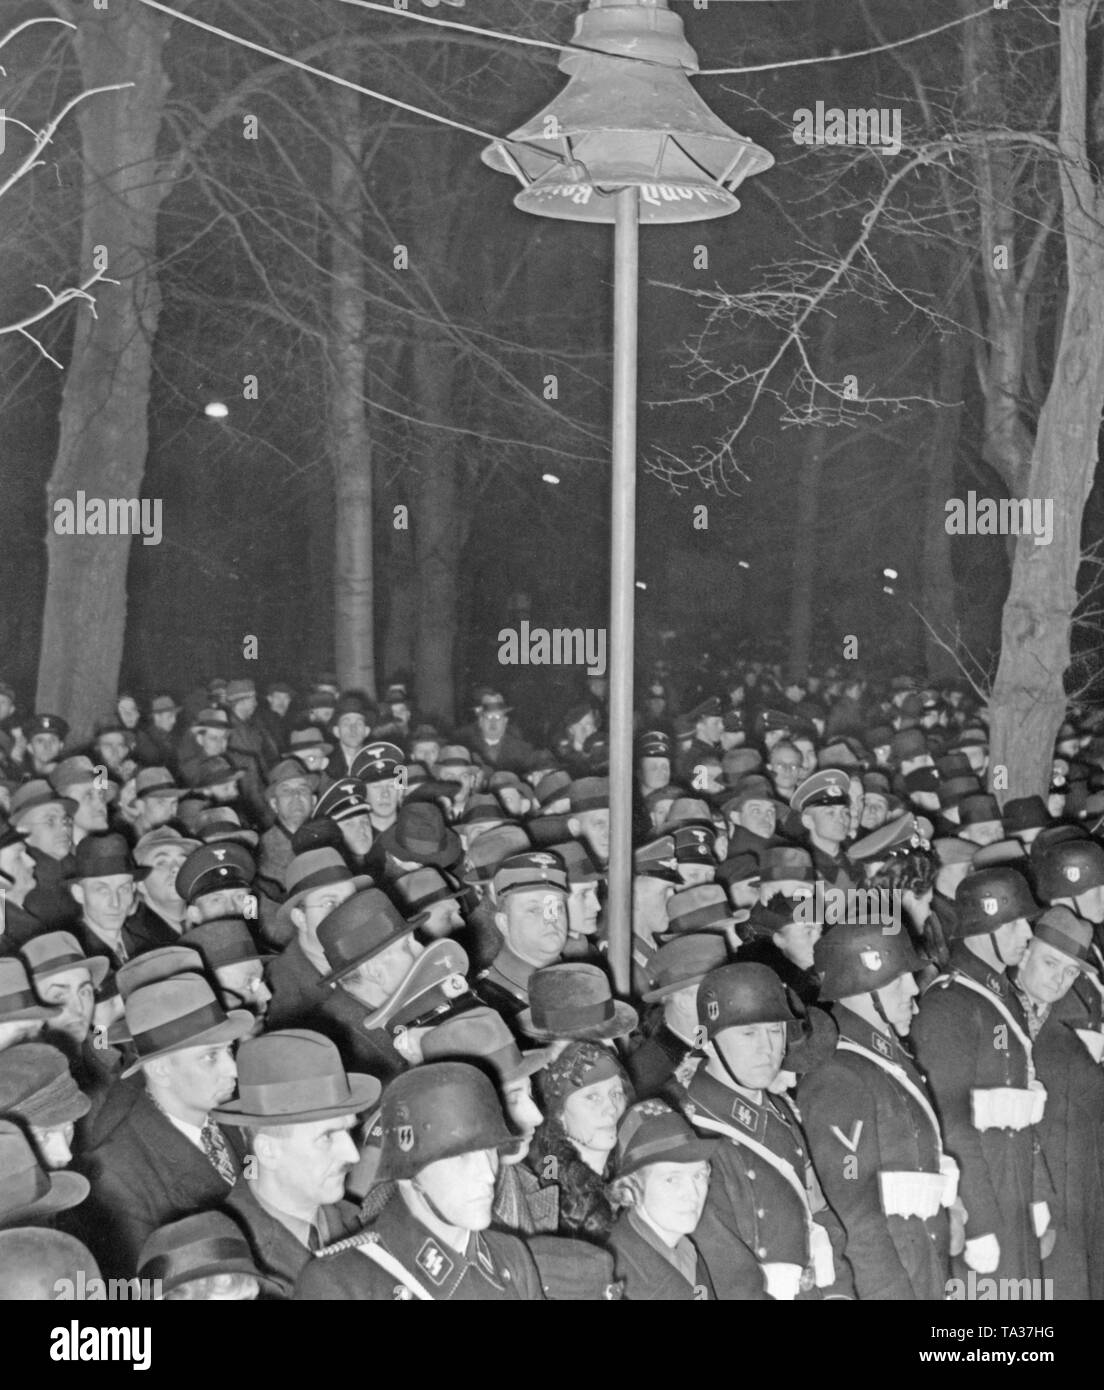 Il primo gruppo del Reichstag dopo il Anschluss dell'Austria per il Reich tedesco. Il parlato viene trasmesso aria aperta tramite altoparlanti. Foto Stock